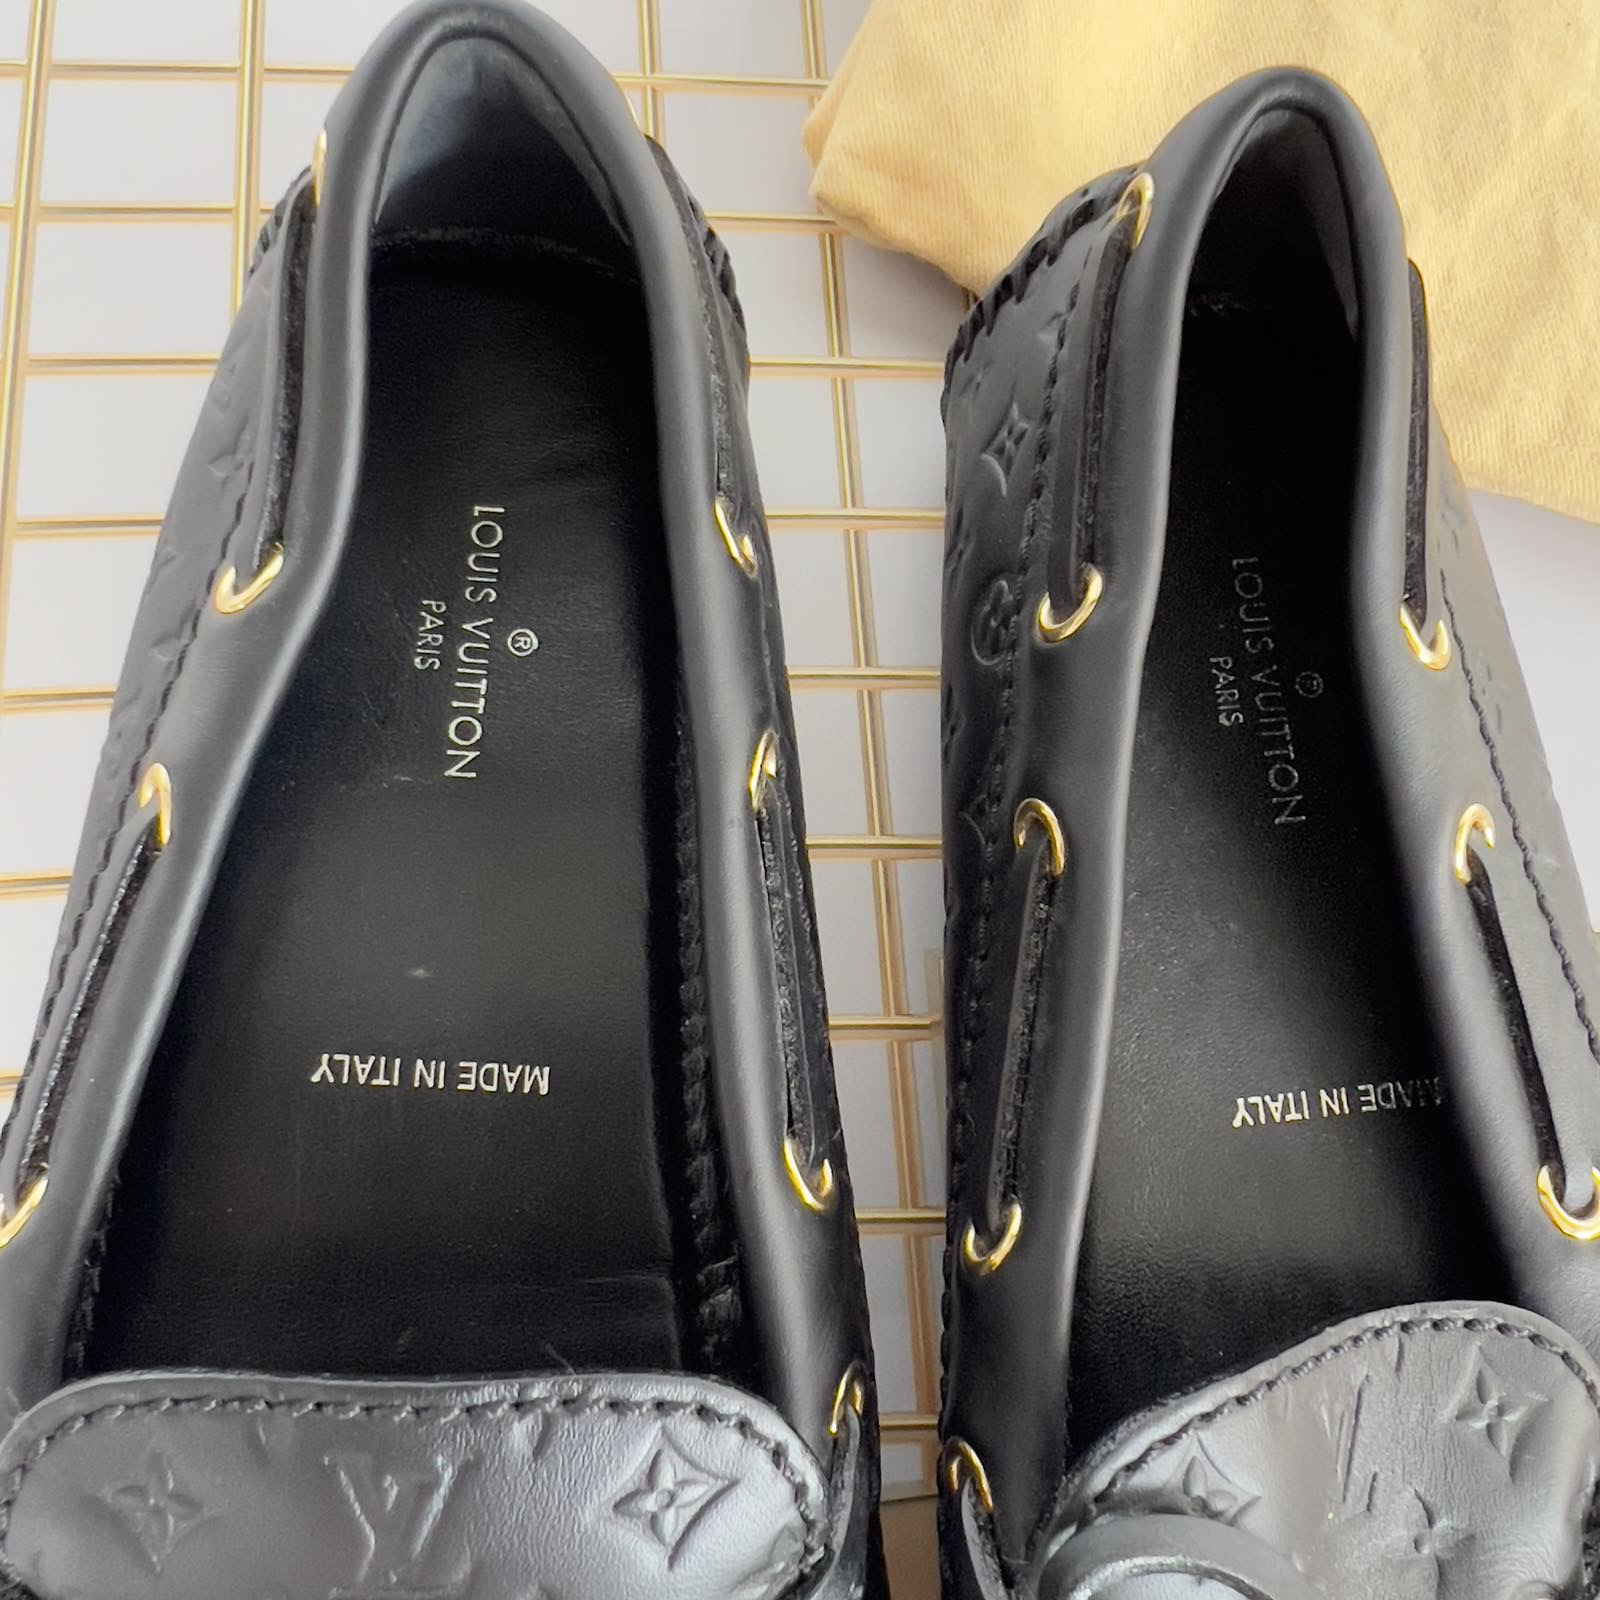 Louis Vuitton Brown Monogram Empreinte Leather Gloria Loafers Size 36